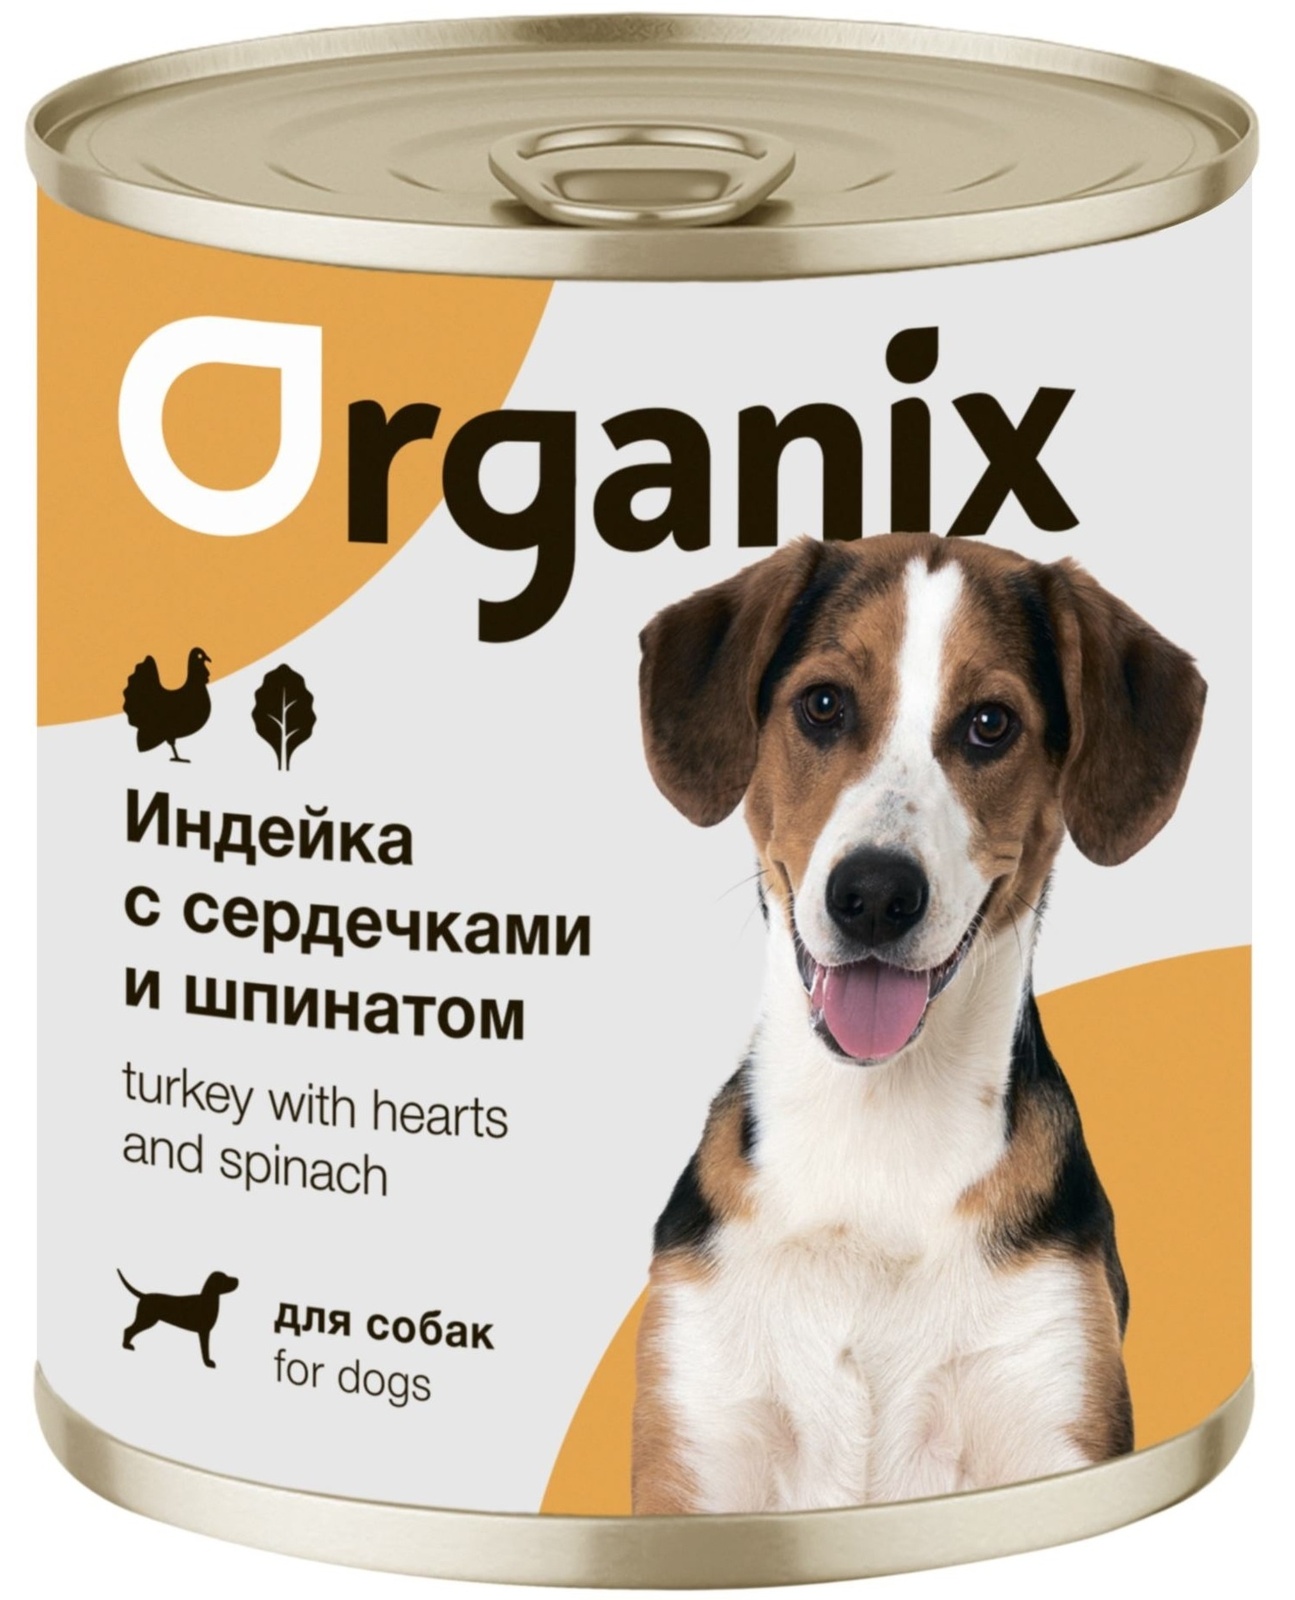 Organix консервы Organix консервы для собак Индейка с сердечками и шпинатом (100 г) organix консервы organix консервы для собак ягненок с рубцом и морковью 100 г